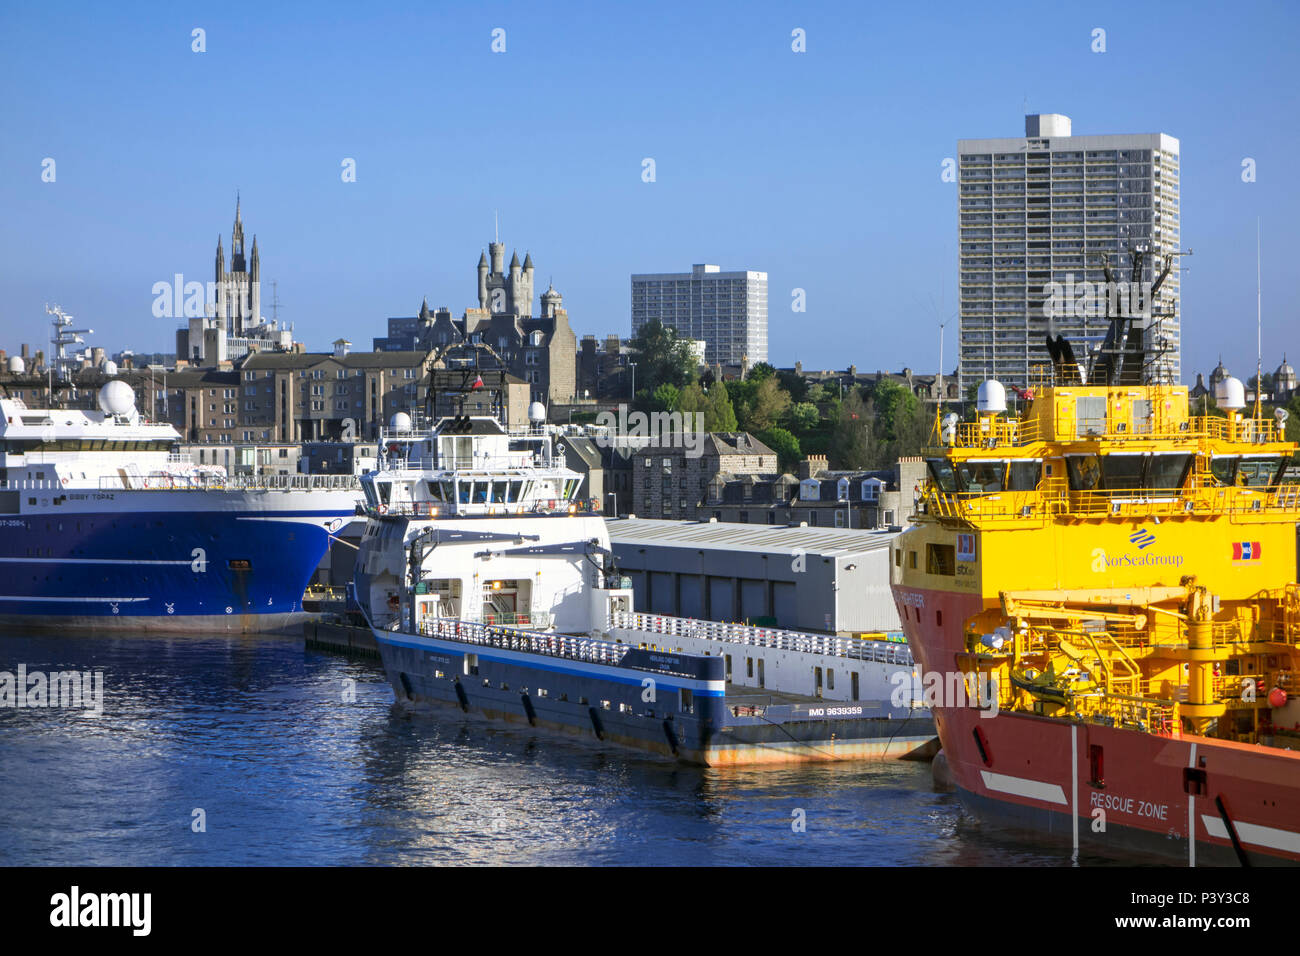 Le navi ancorate nel porto di Aberdeen / Harbour, Aberdeenshire, Scotland, Regno Unito Foto Stock